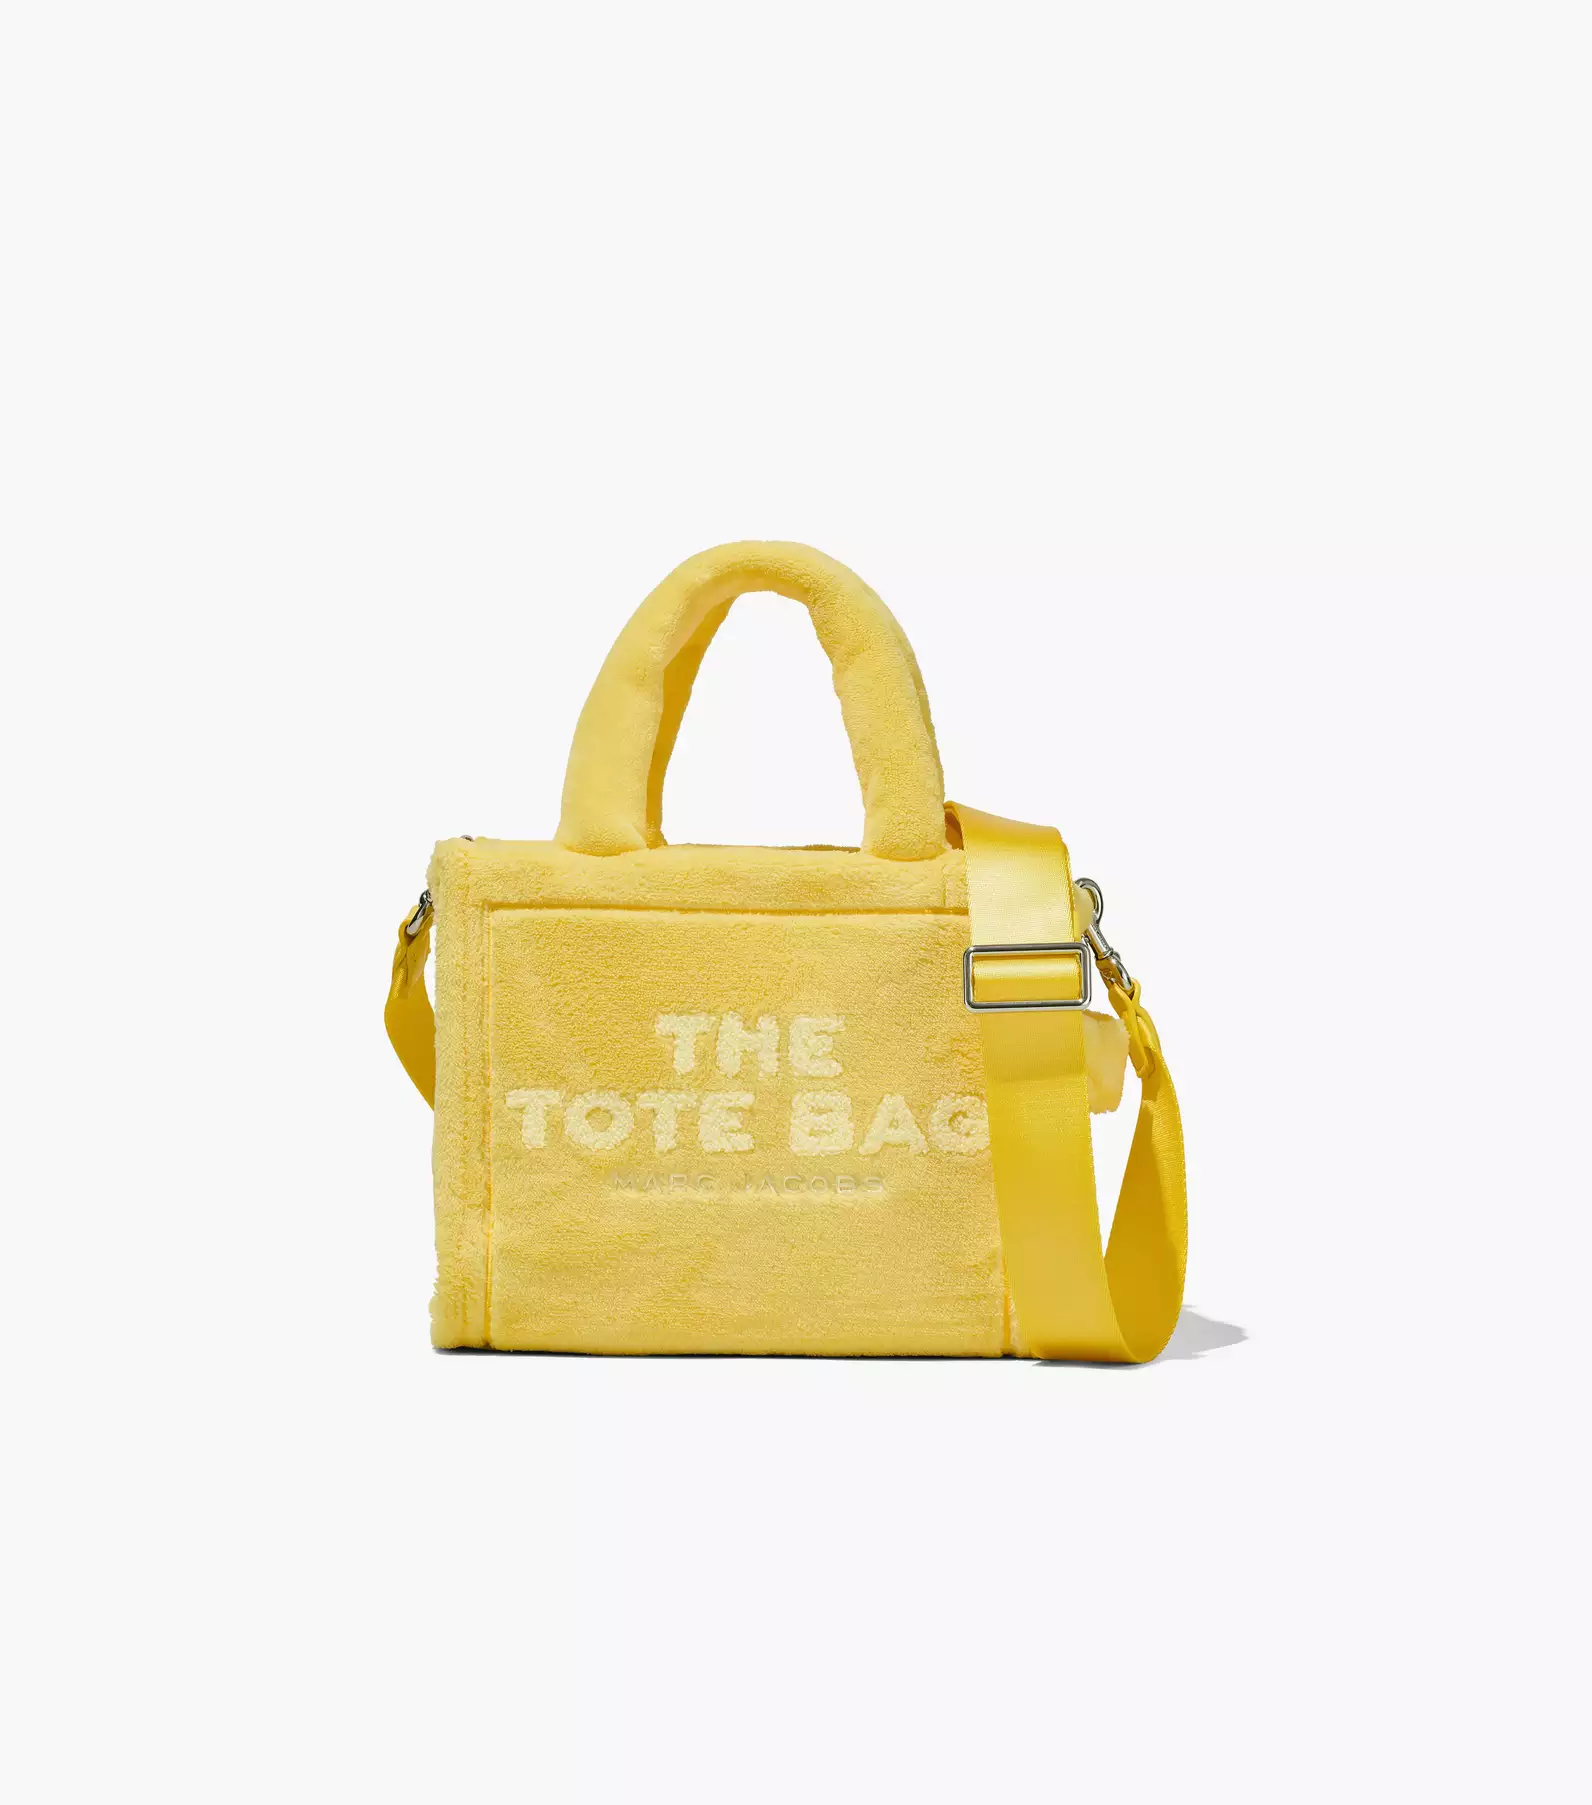 The Terry Mini Tote Bag(The Tote Bag)